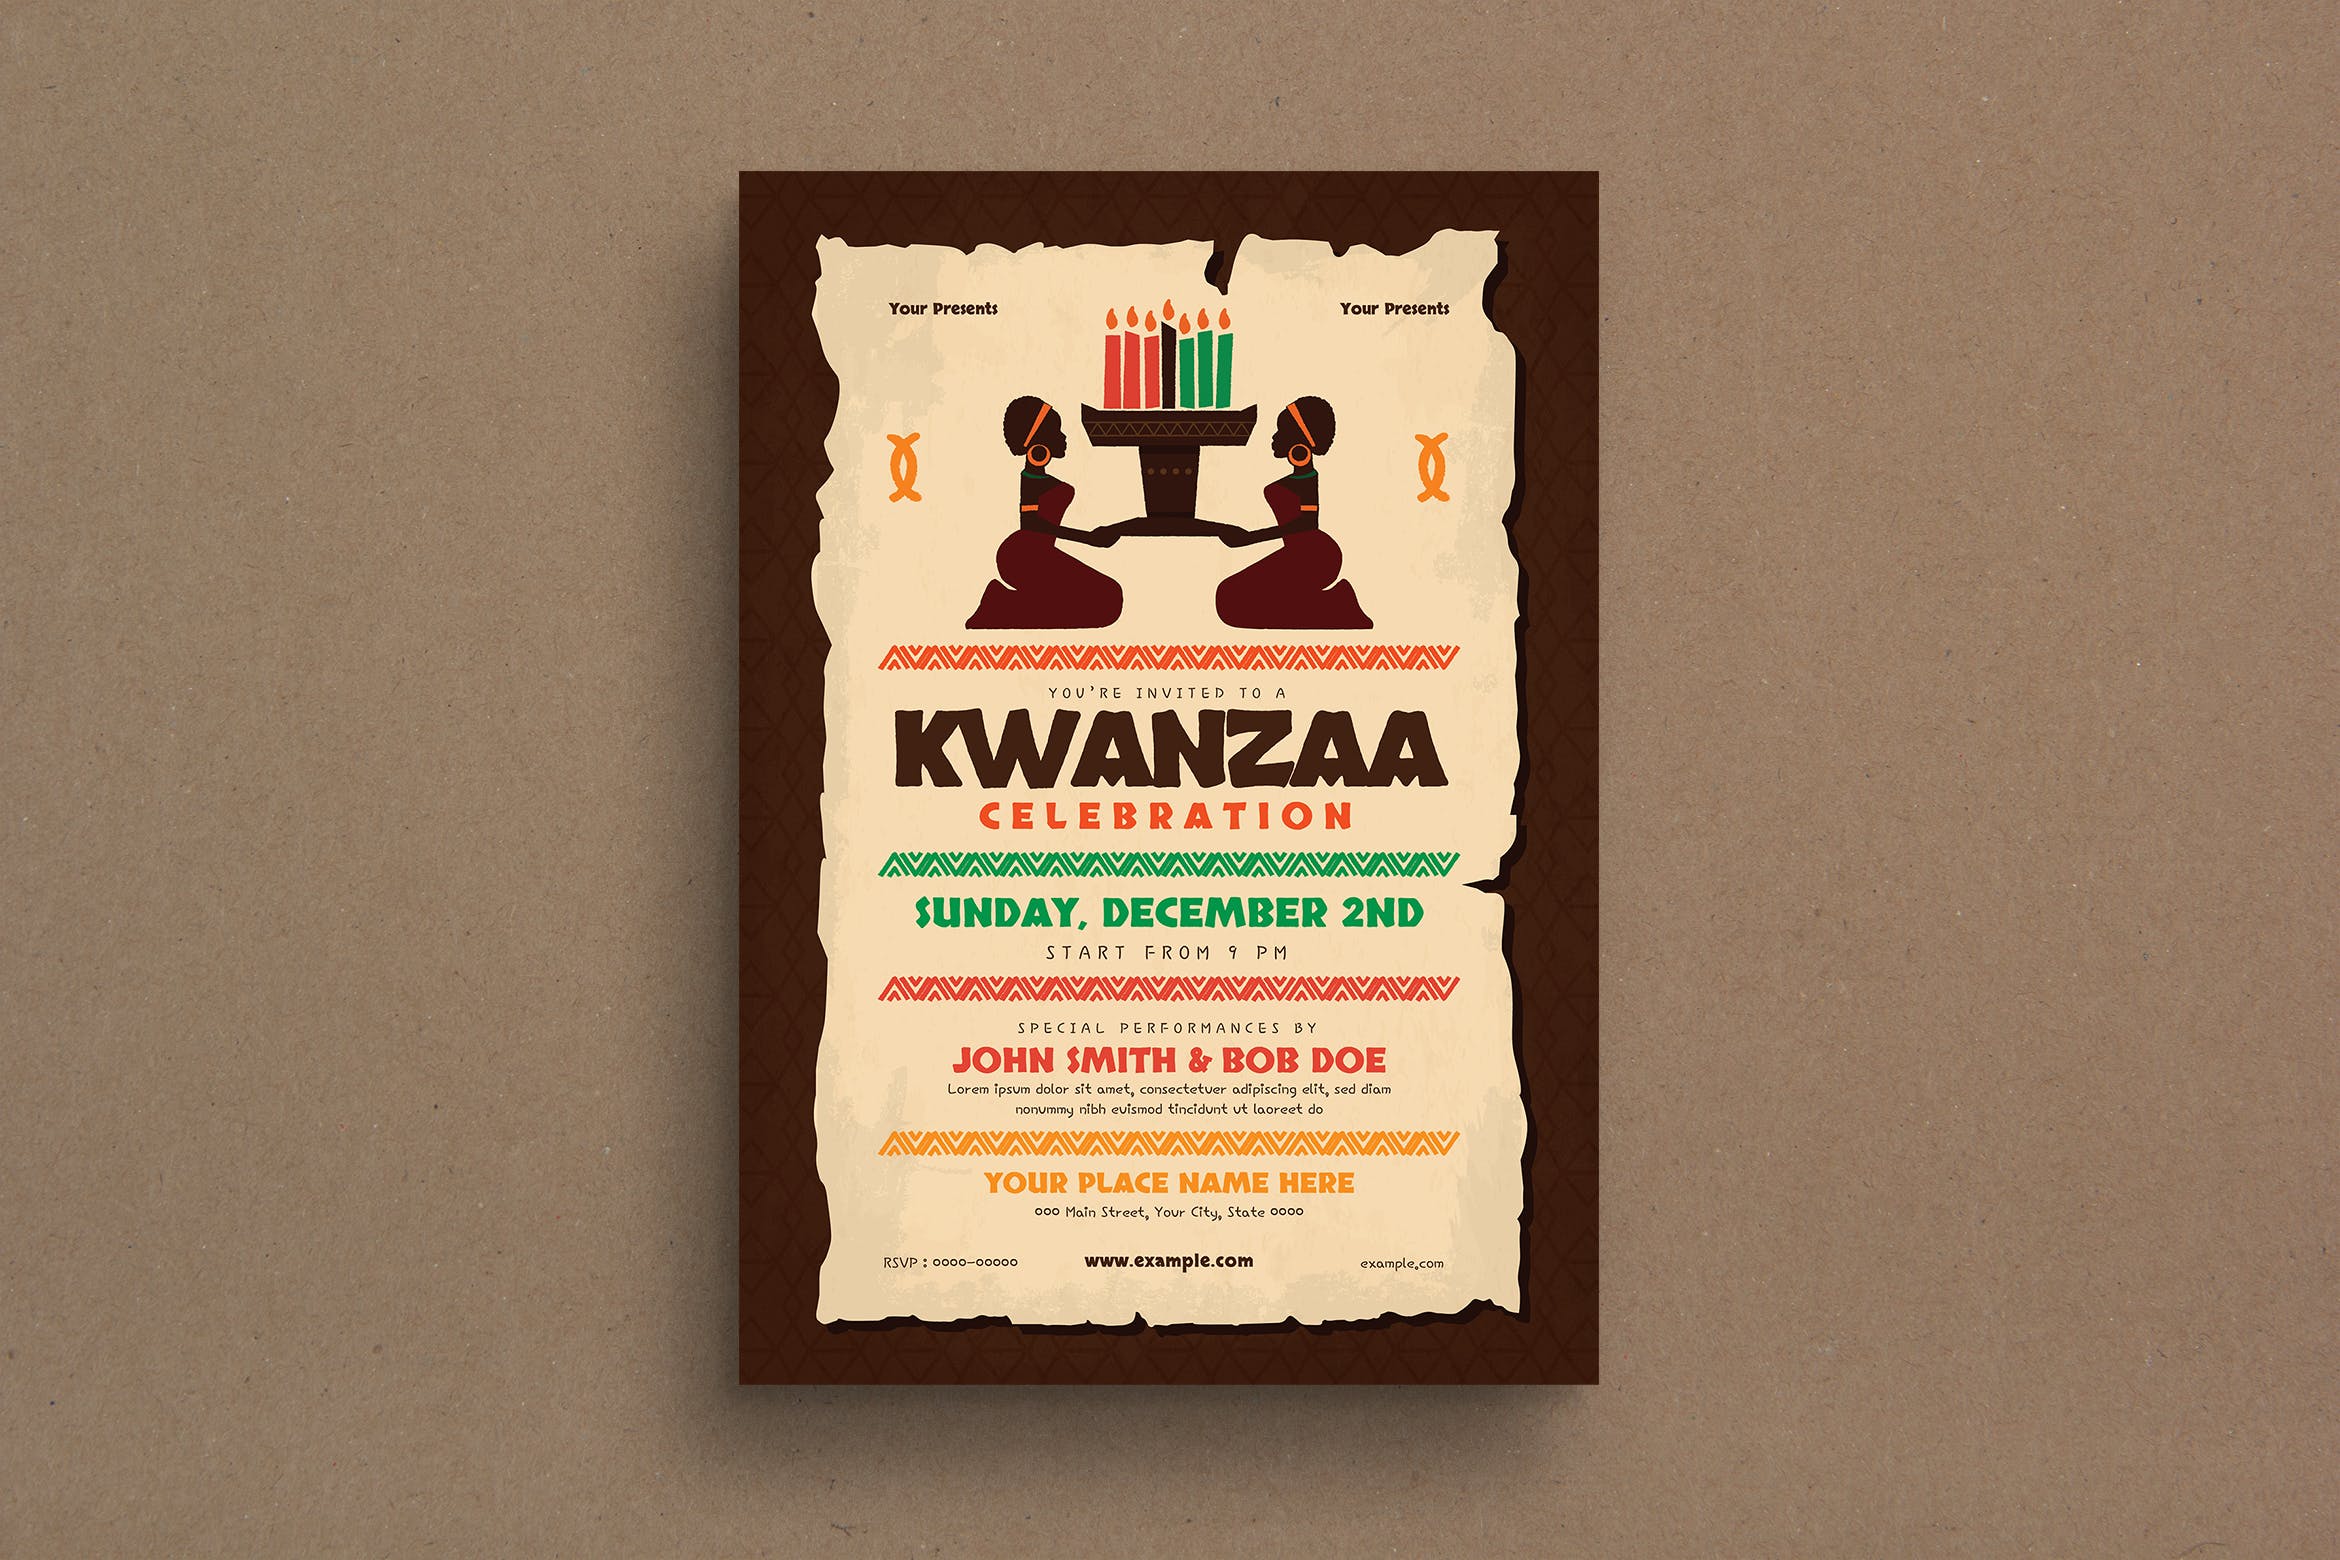 宽扎节庆祝活动主题海报传单第一素材精选PSD模板 Kwanzaa Event Flyer插图